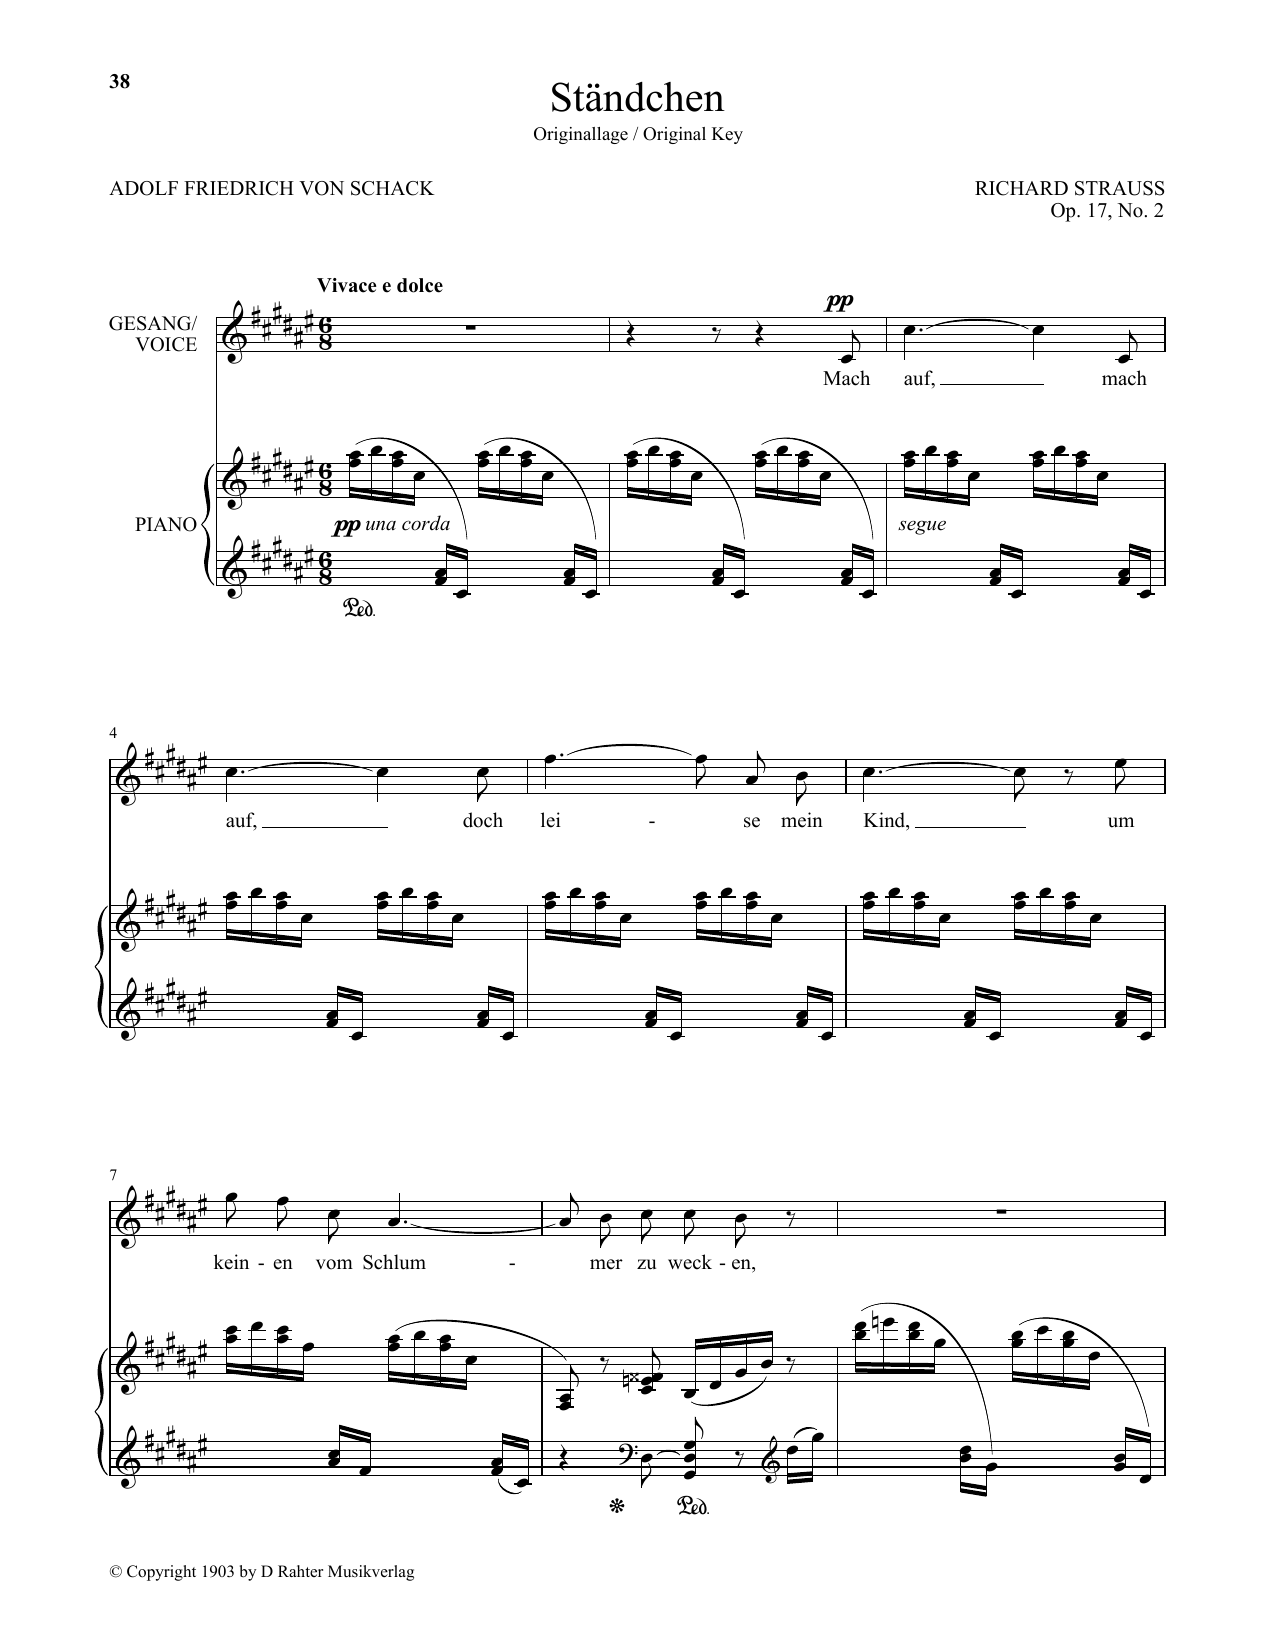 Download Richard Strauss Standchen (High Voice) Sheet Music